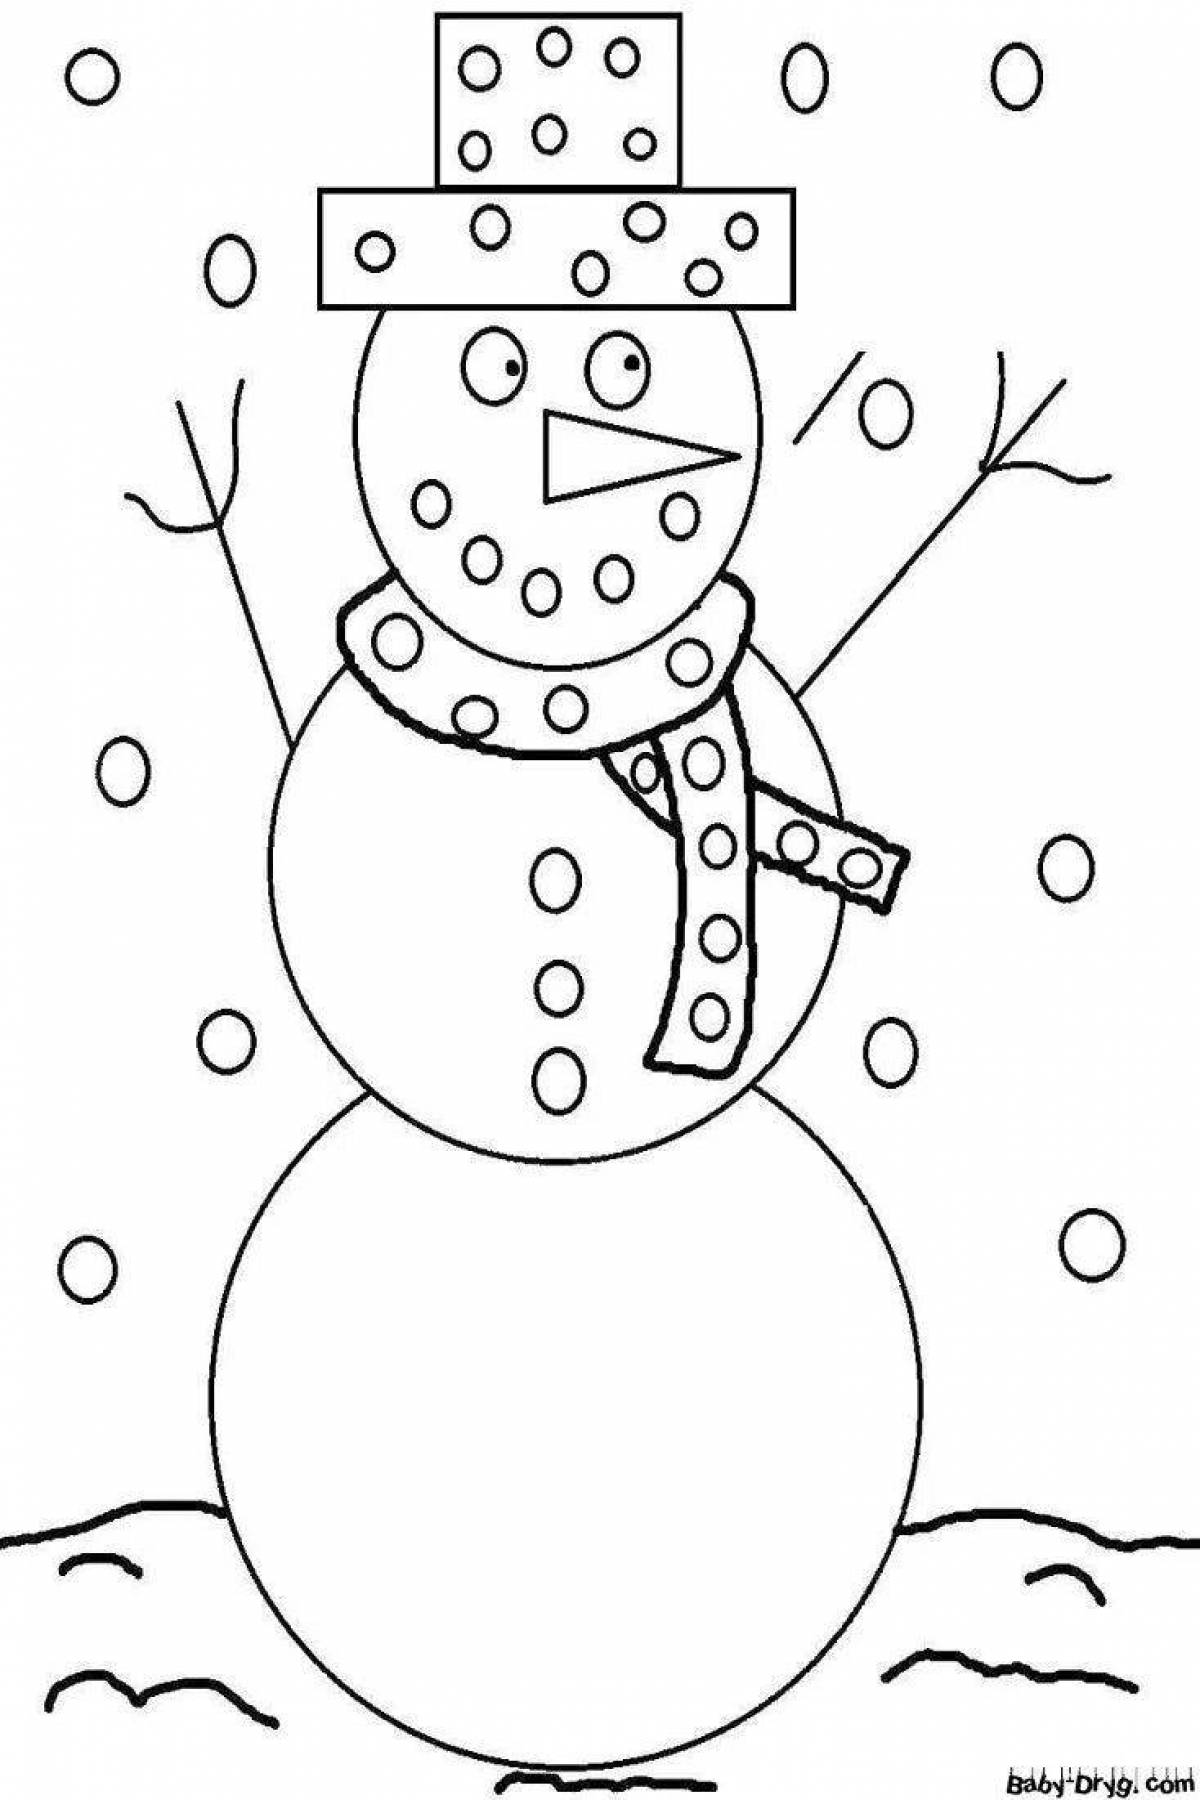 Забавная раскраска снеговик для детей 5 лет